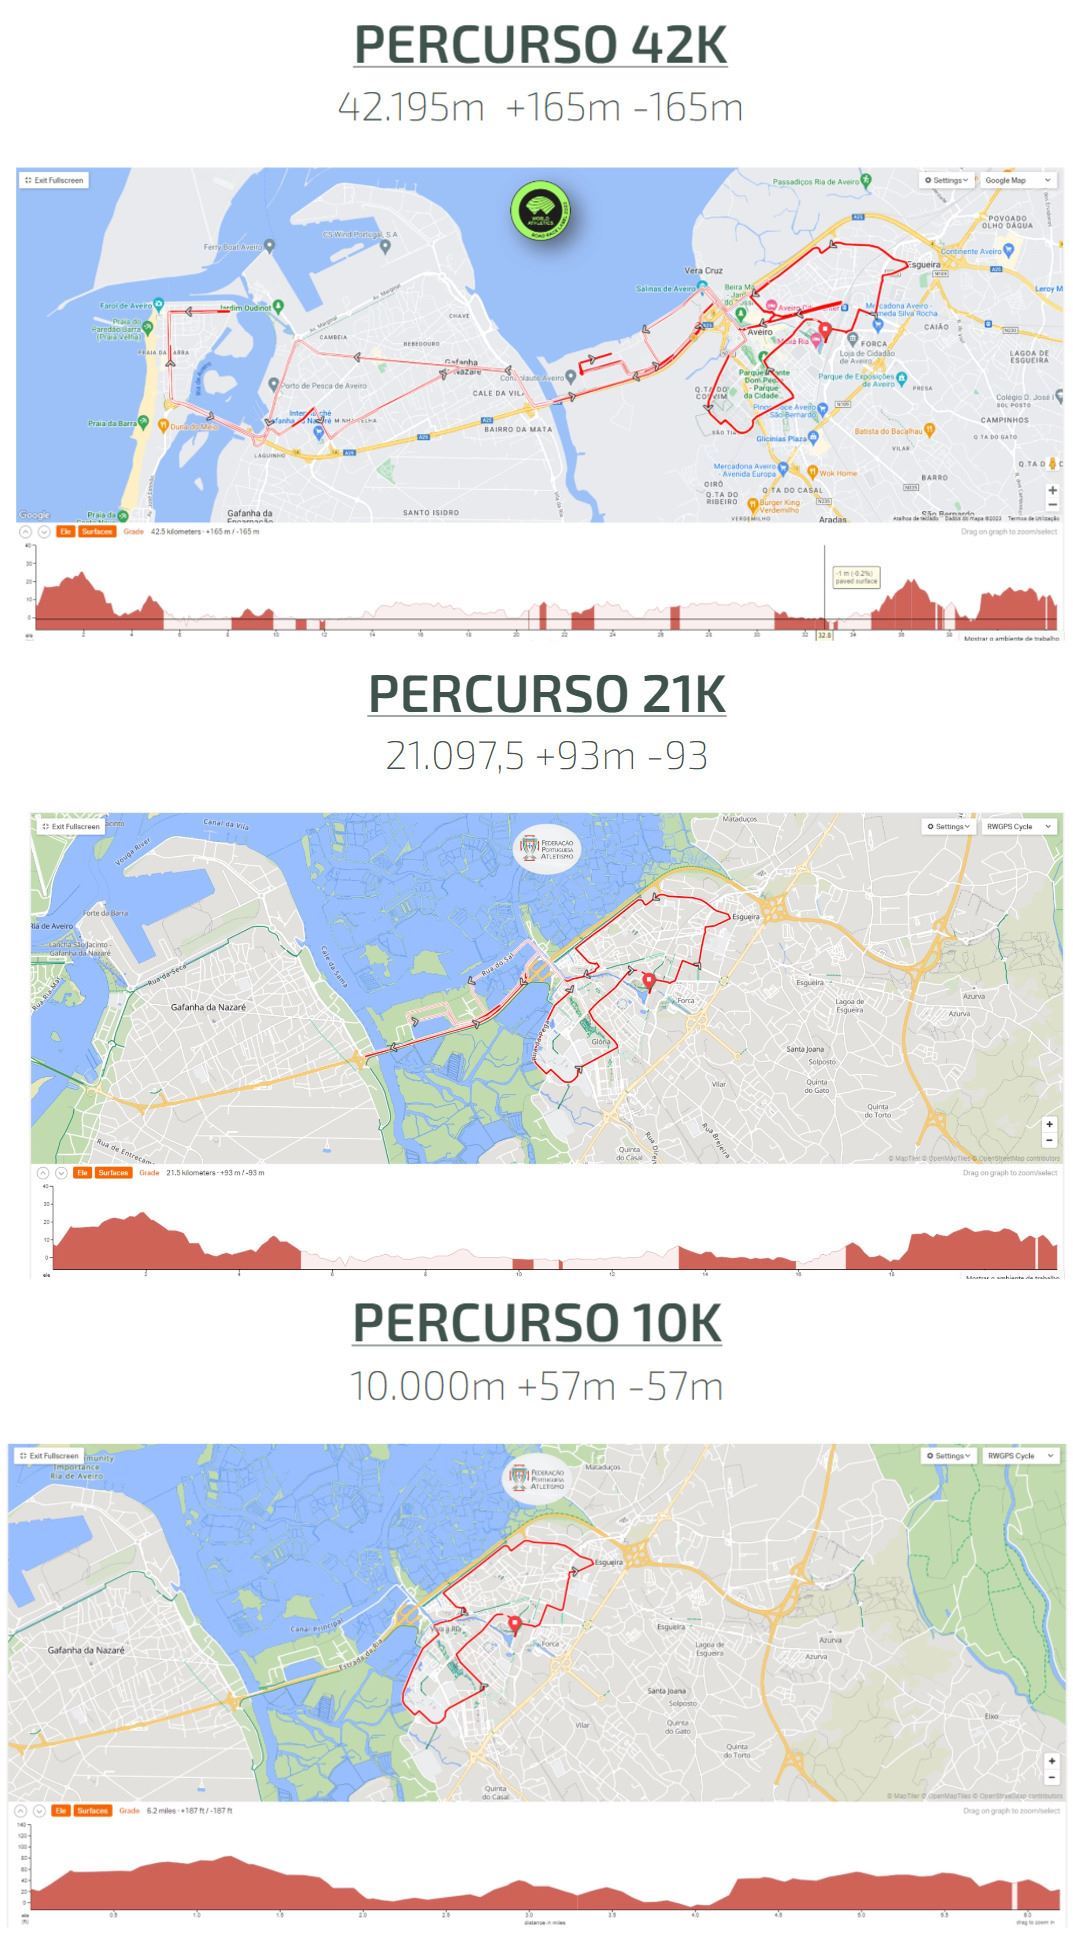 Maratona Da Europa - Aveiro Mappa del percorso